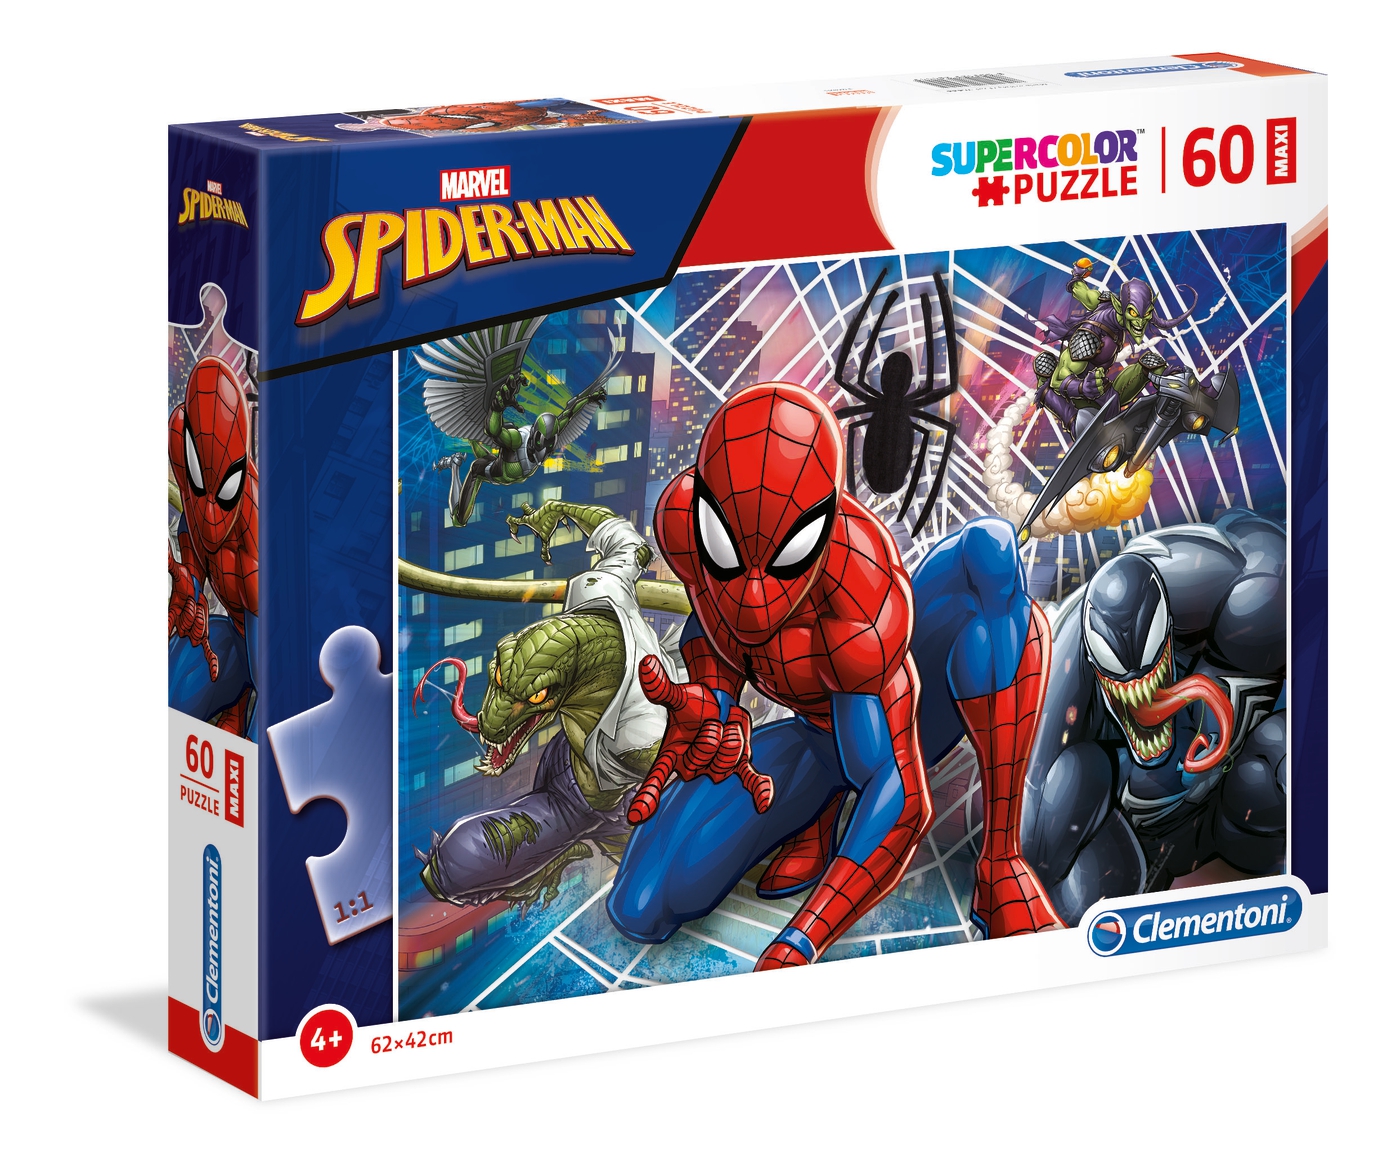 Trefl 60 pezzi Bambini Ragazzi Disney Marvel Superhero coraggioso SPIDERMAN PUZZLE 